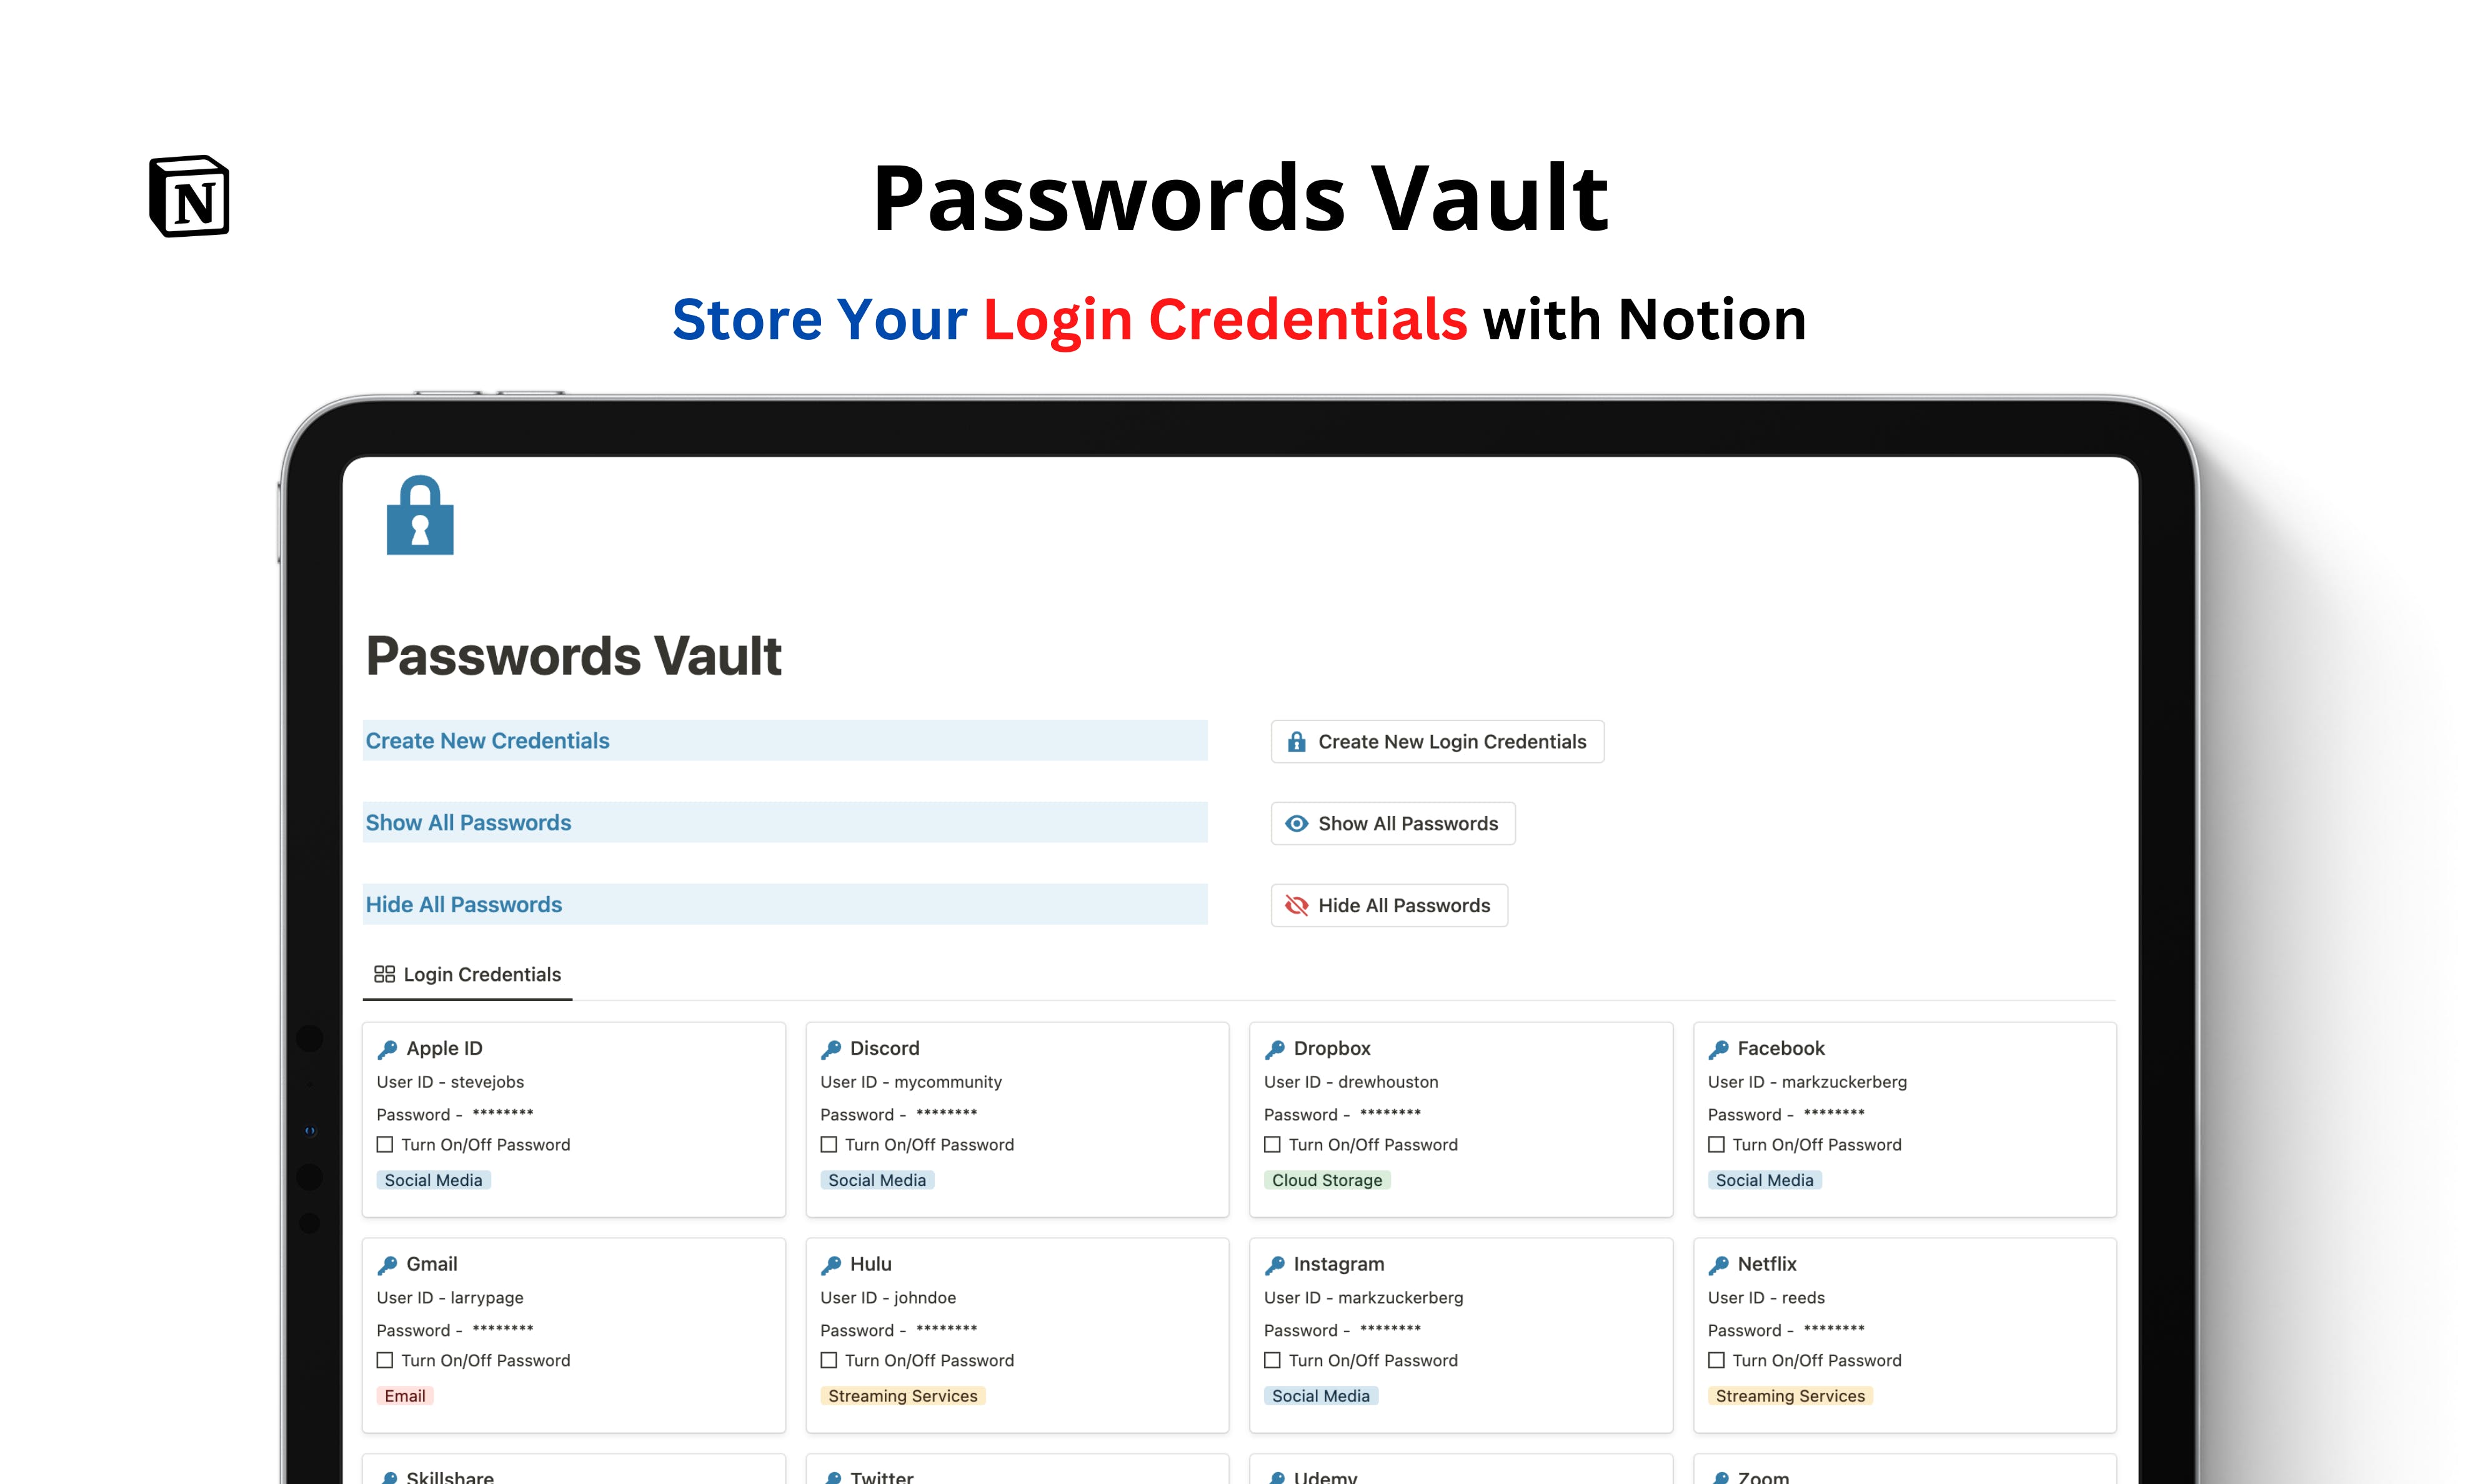 Passwords Vault media 1